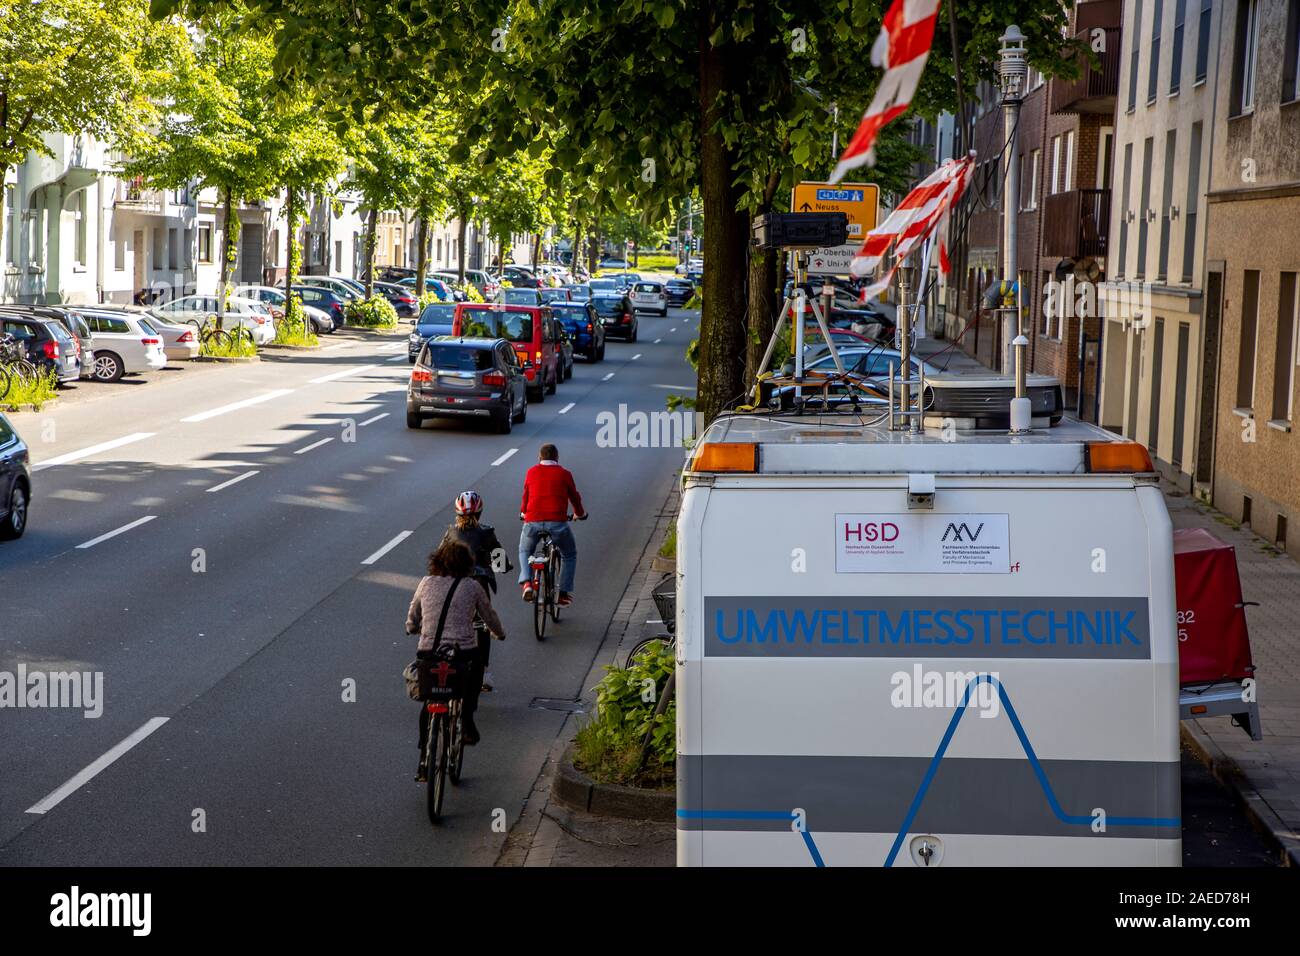 Düsseldorf, ambientales lane Merowinger Street, en el distrito de estafarle, sólo taxis, ciclistas, autobuses y e-cars pueden conducir en el carril derecho reservado Foto de stock